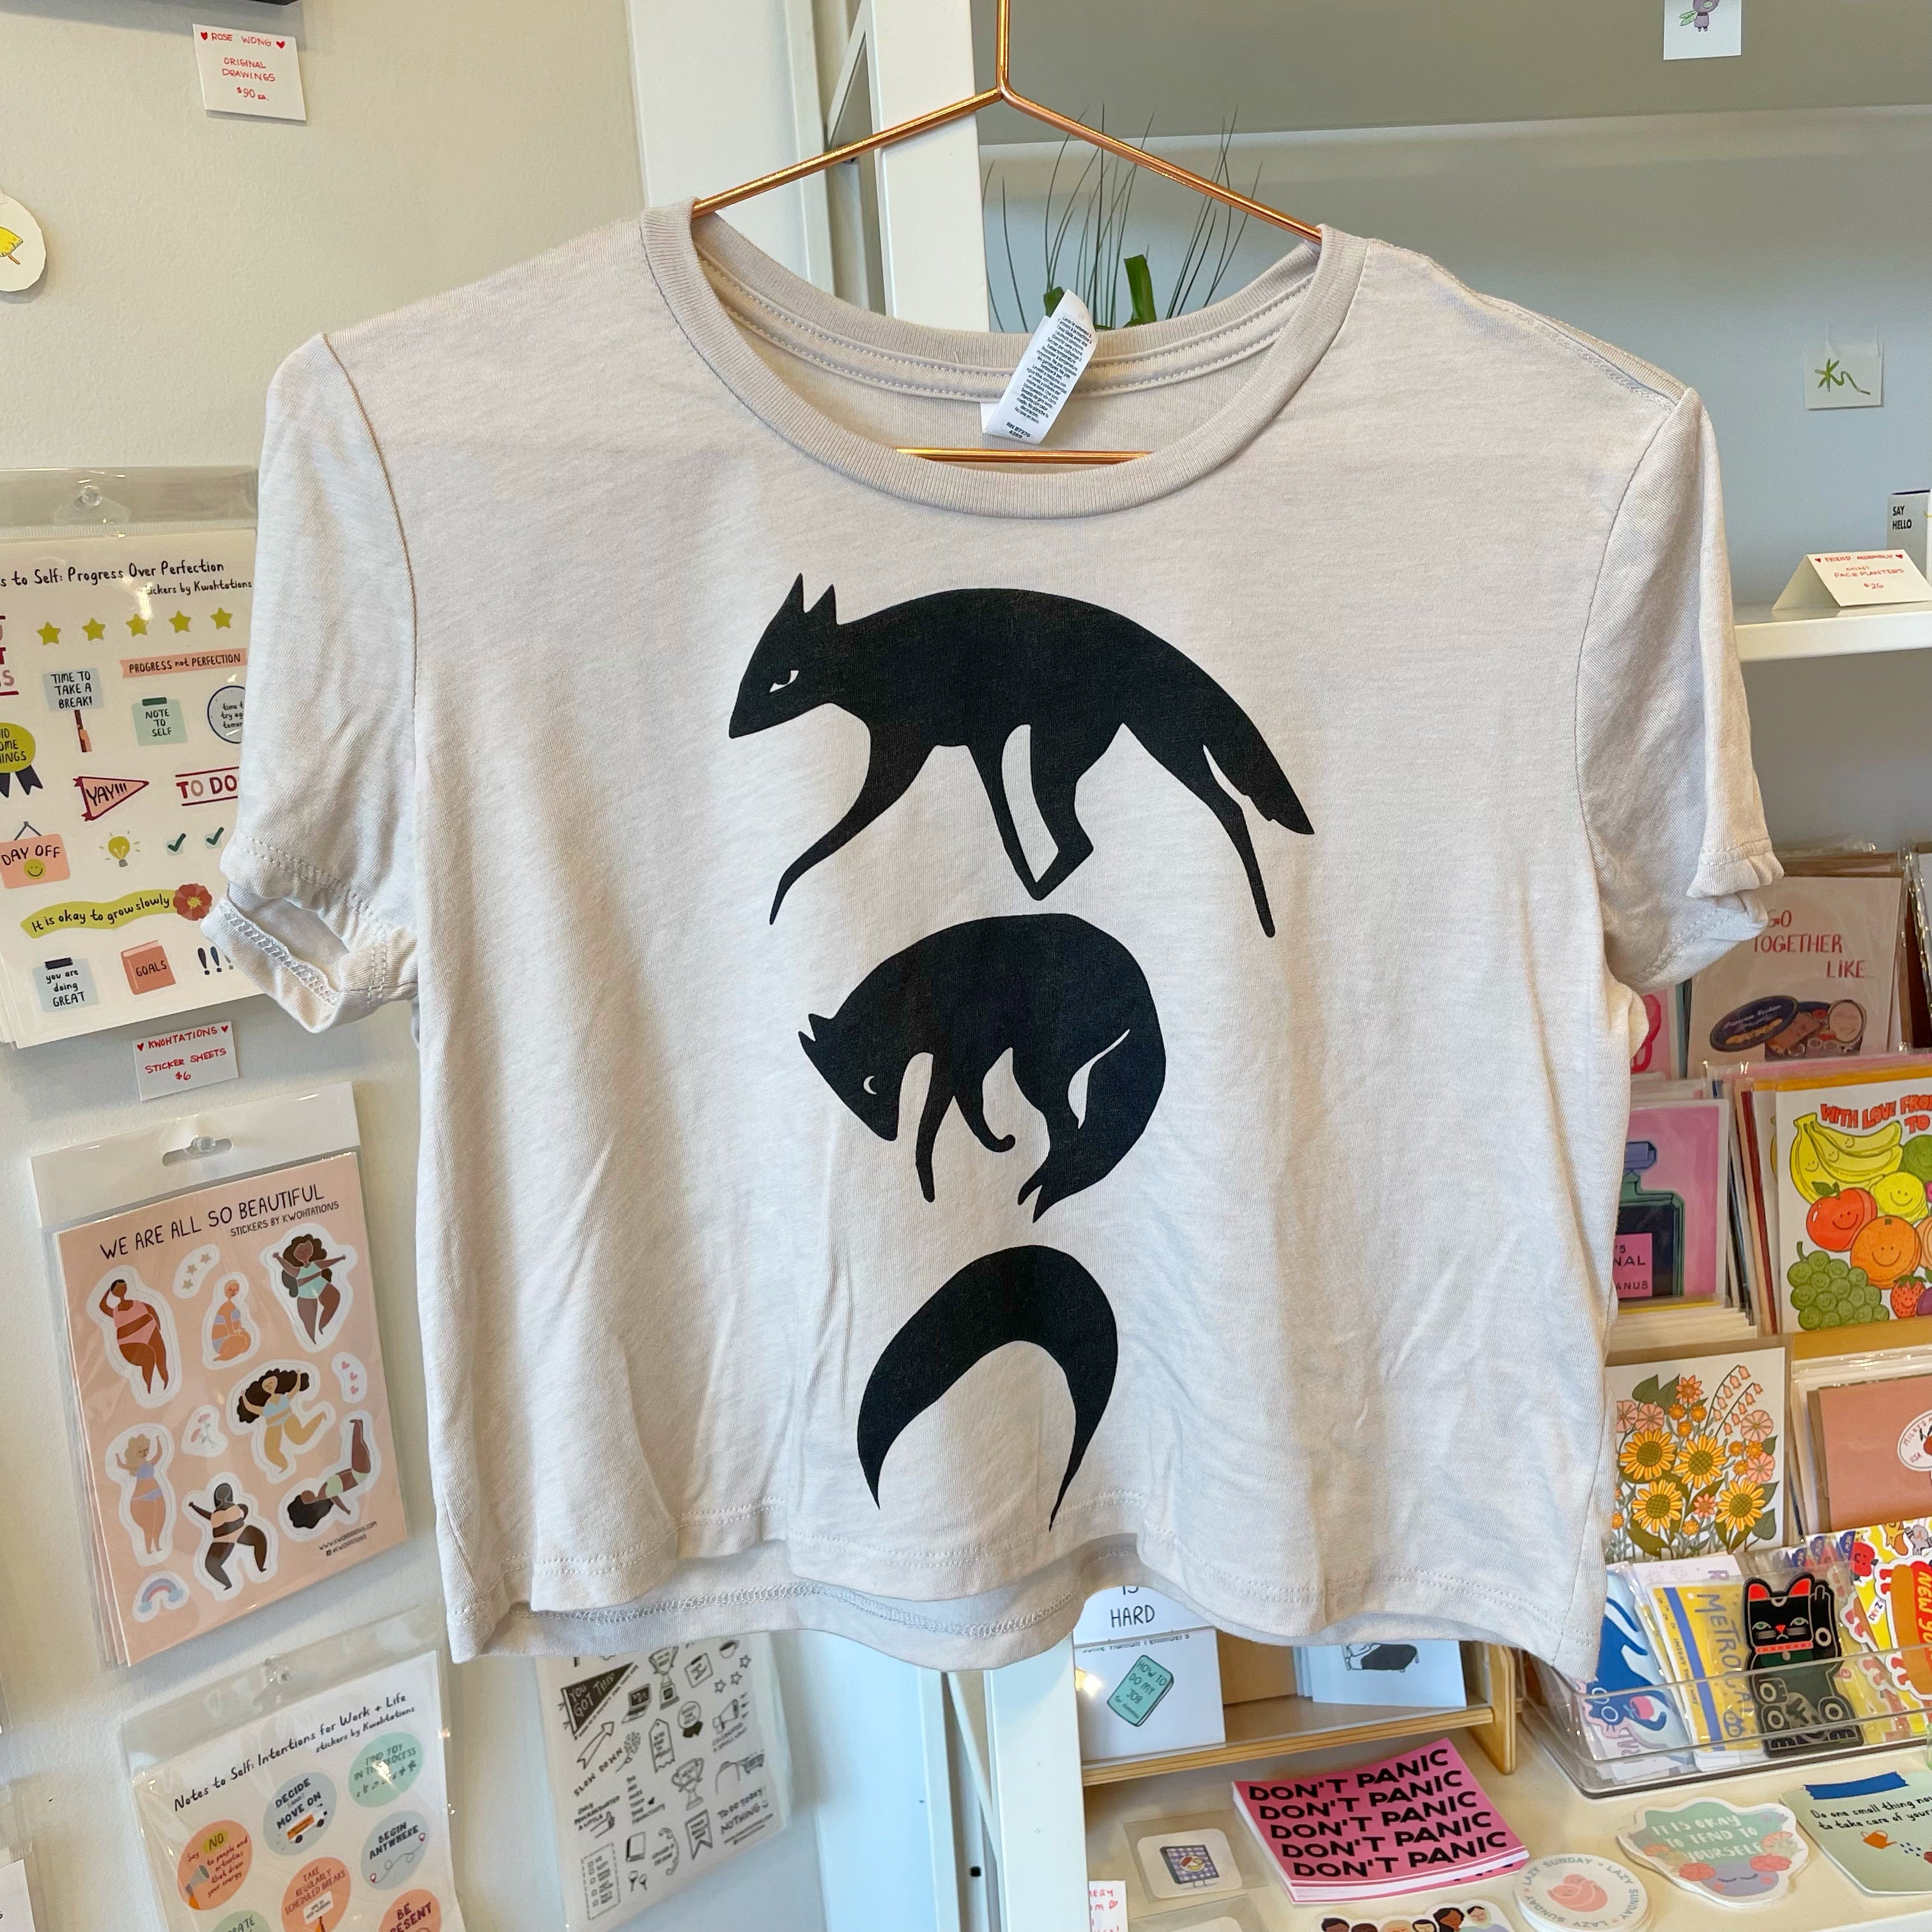 MASSIVE GOODS: Shibari T-Shirt – From Here to Sunday